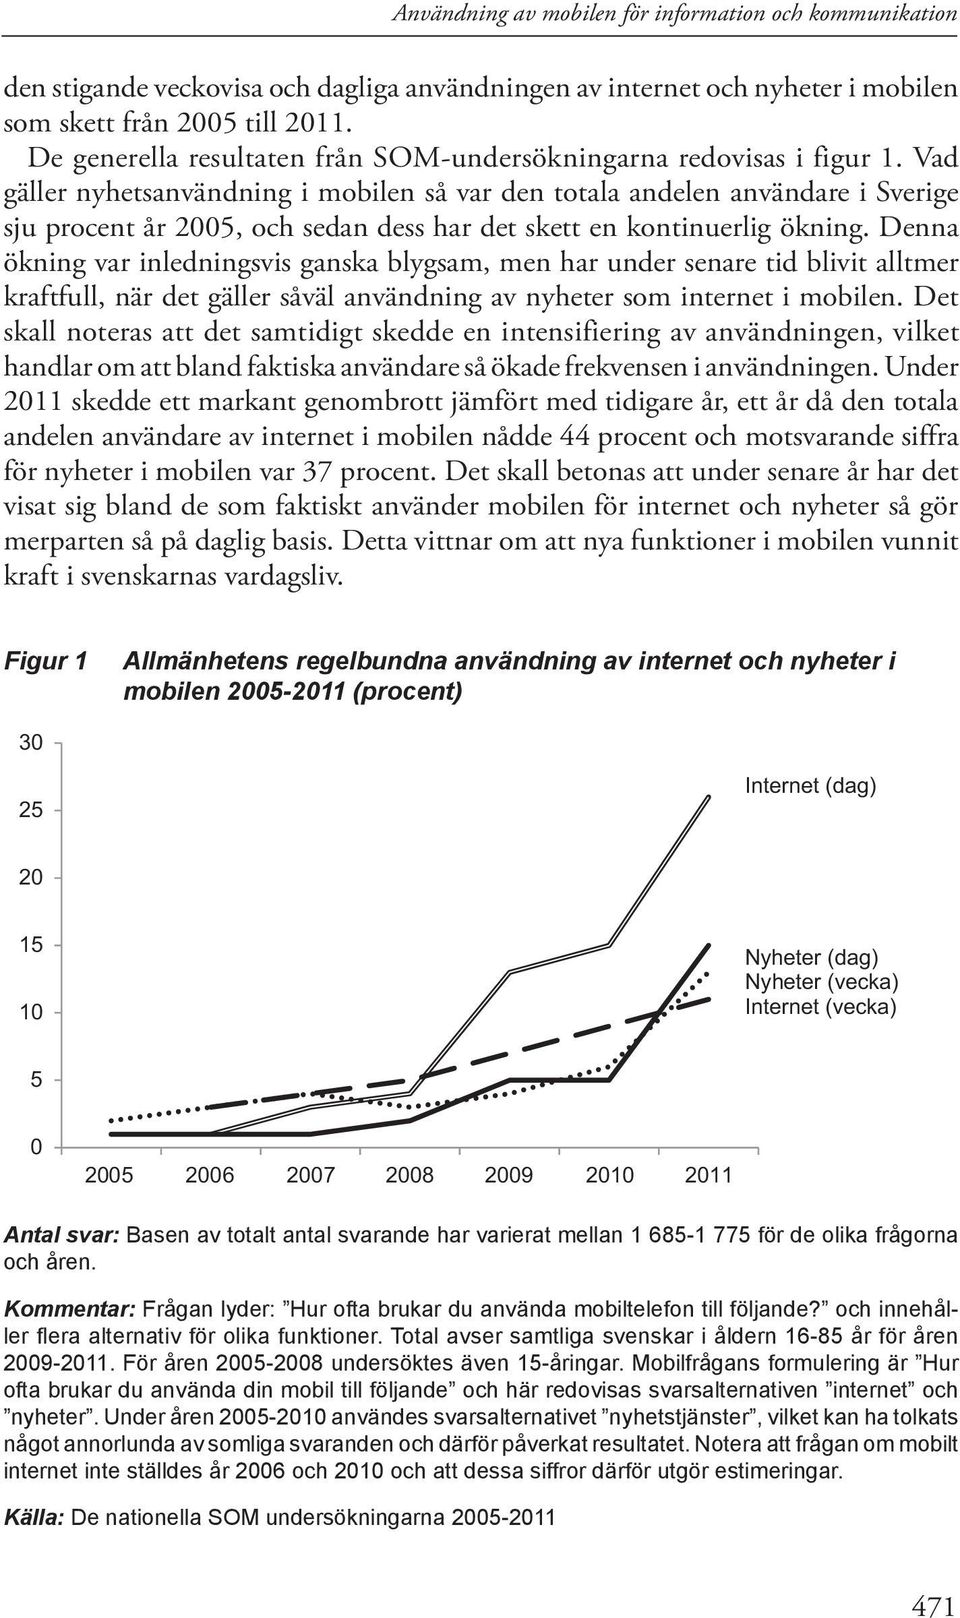 Vad gäller nyhetsanvändning i mobilen så var den totala andelen användare i Sverige sju procent år 2005, och sedan dess har det skett en kontinuerlig ökning.